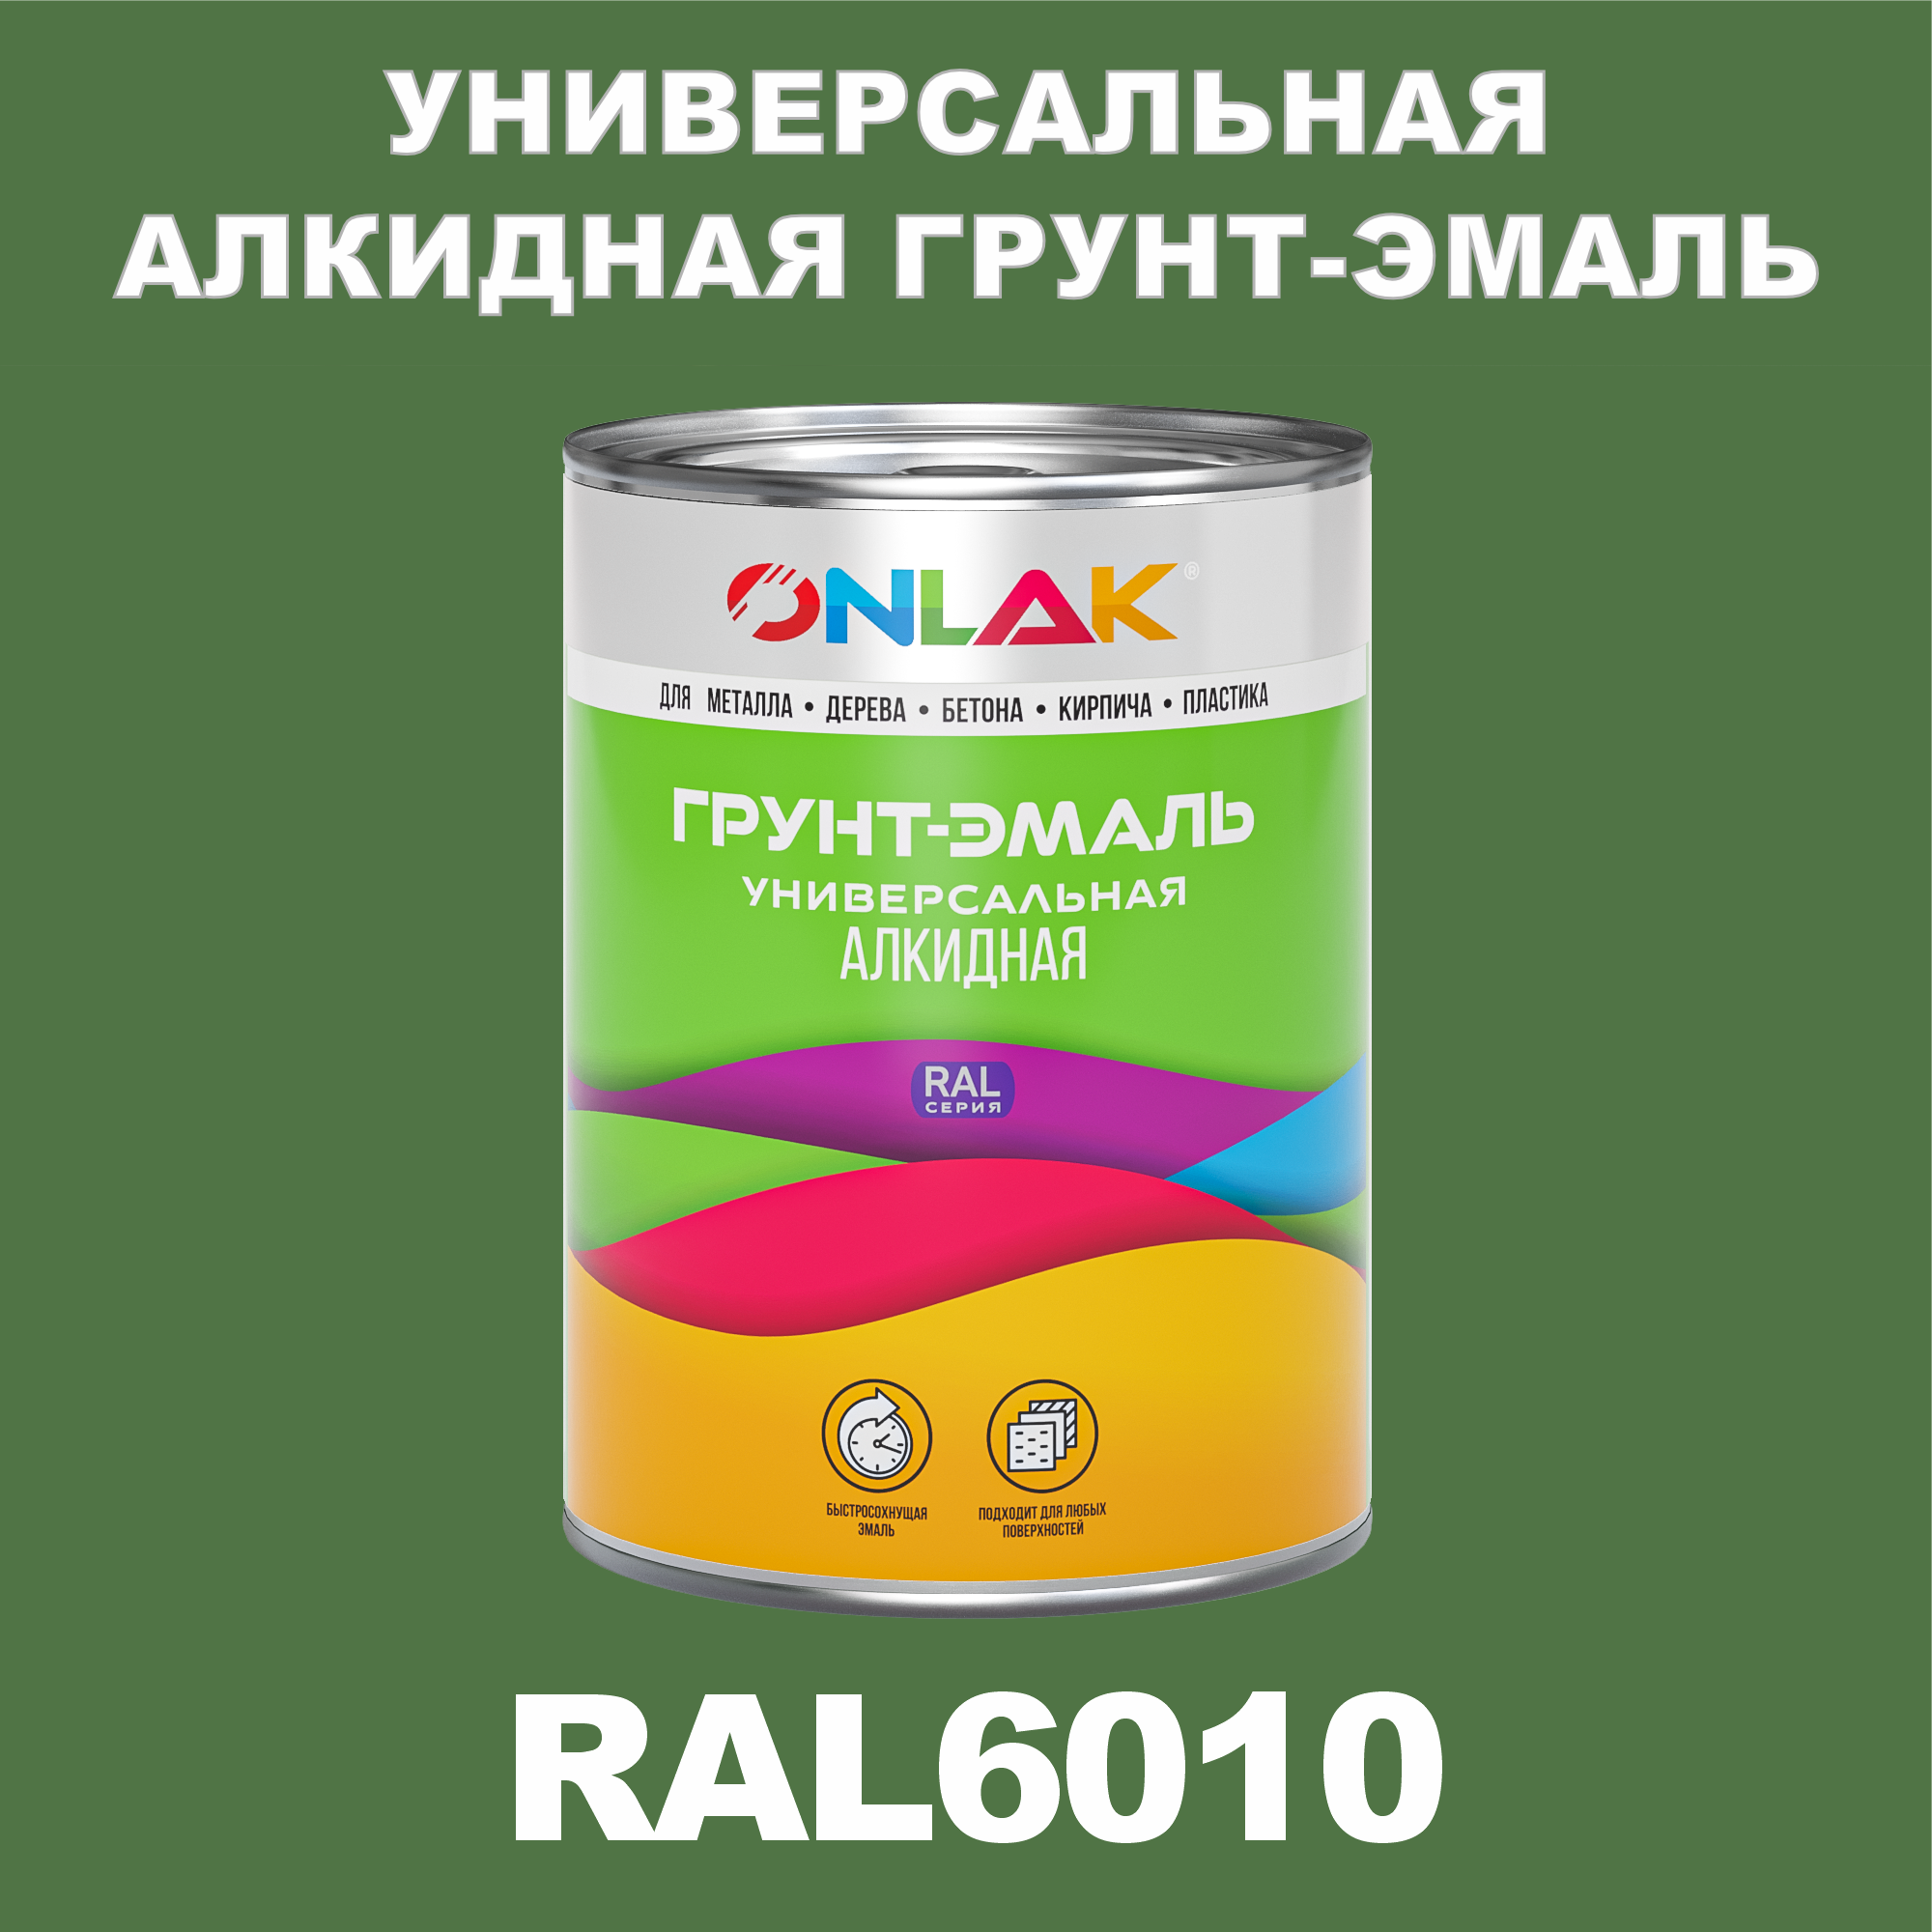 Грунт-эмаль ONLAK 1К RAL6010 антикоррозионная алкидная по металлу по ржавчине 1 кг грунт эмаль neomid по ржавчине быстросохнущая алкидная серая 0 9 кг